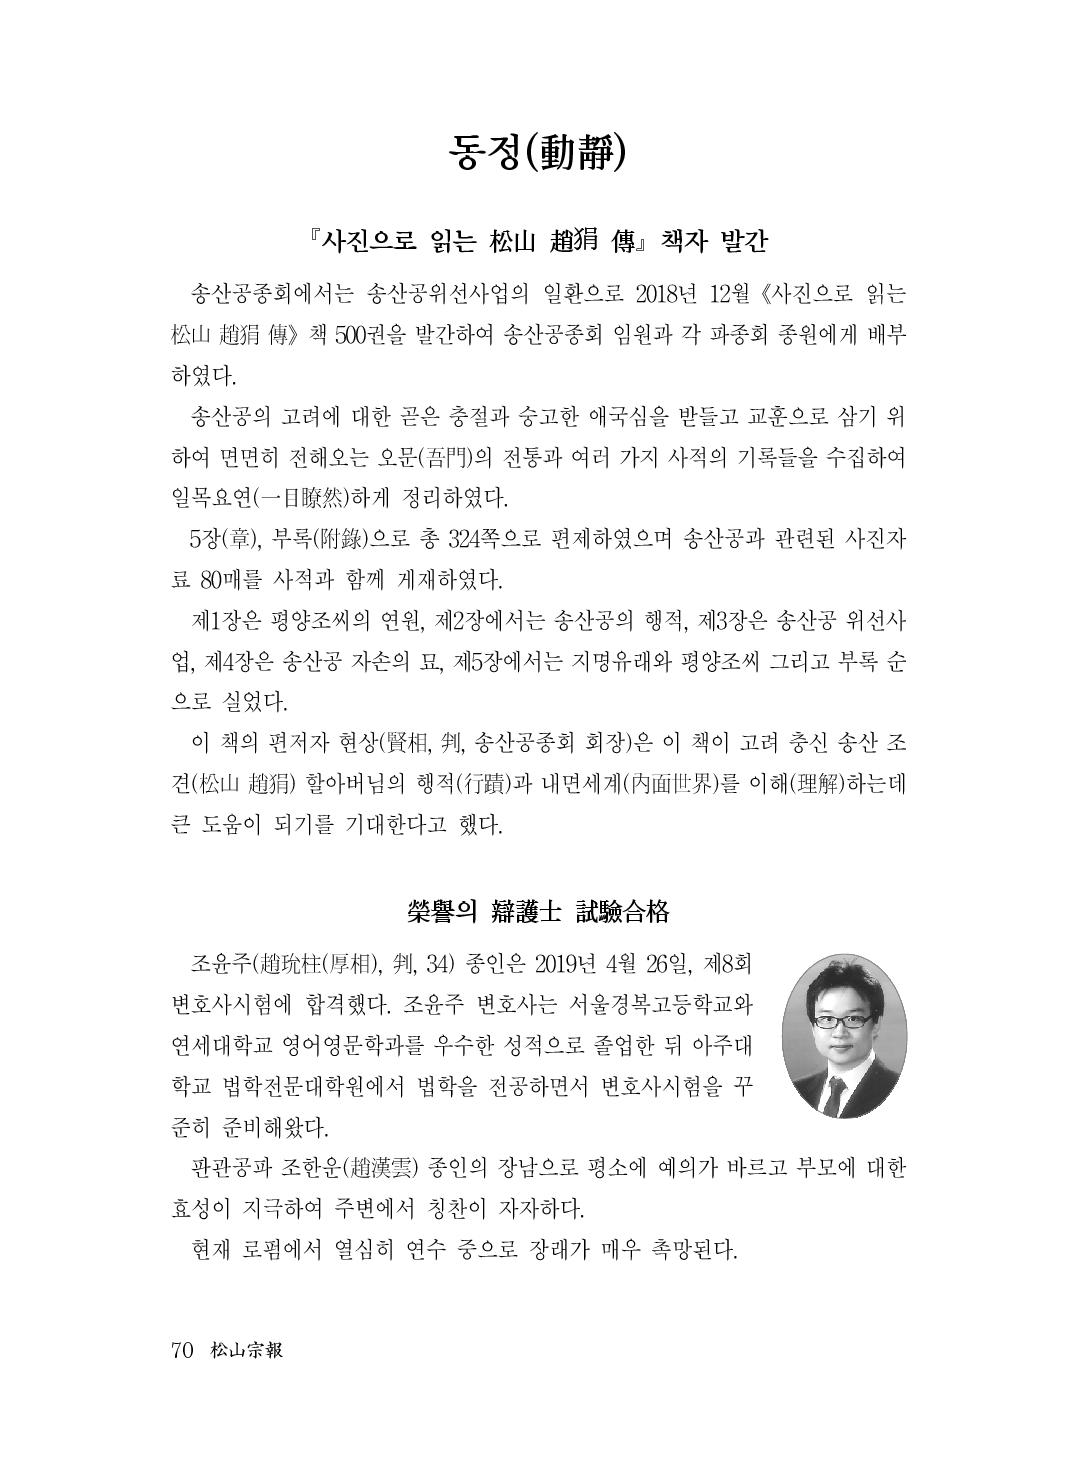 (전체) 송산종보(27호)(최종)_71.jpg